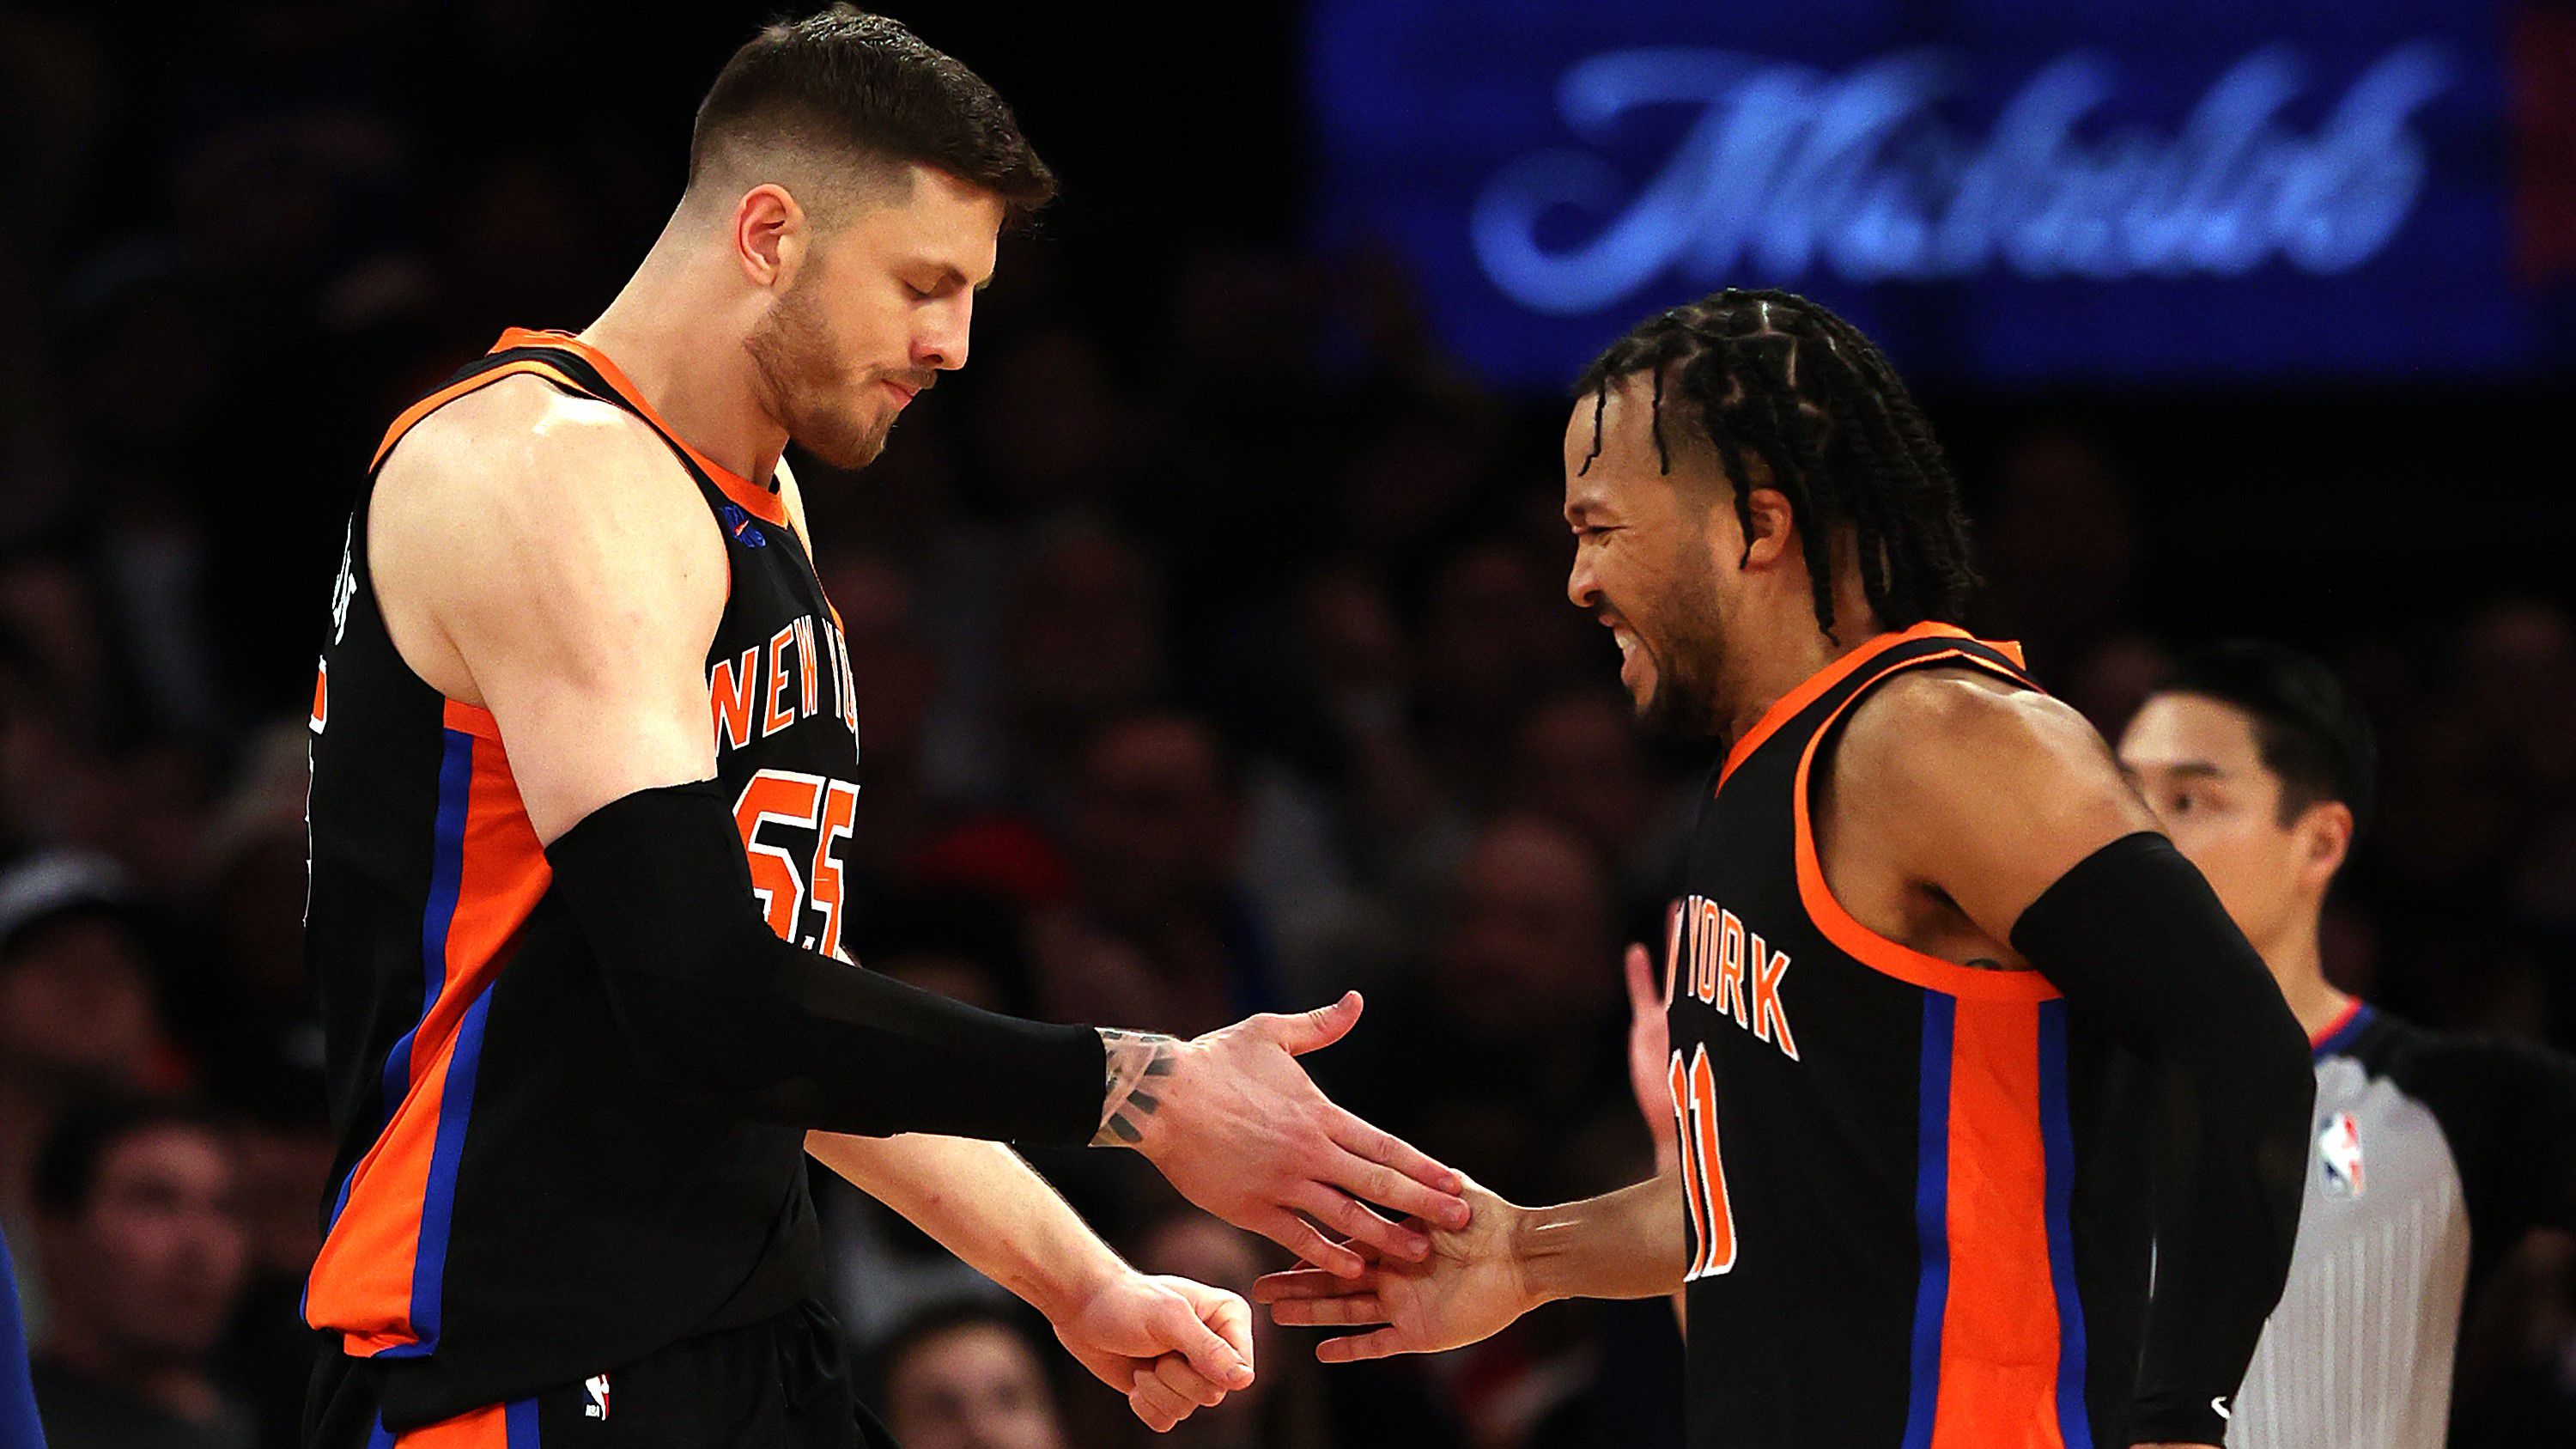 Huszonegy pontos hátrányból fordított a Knicks az NBA-ben